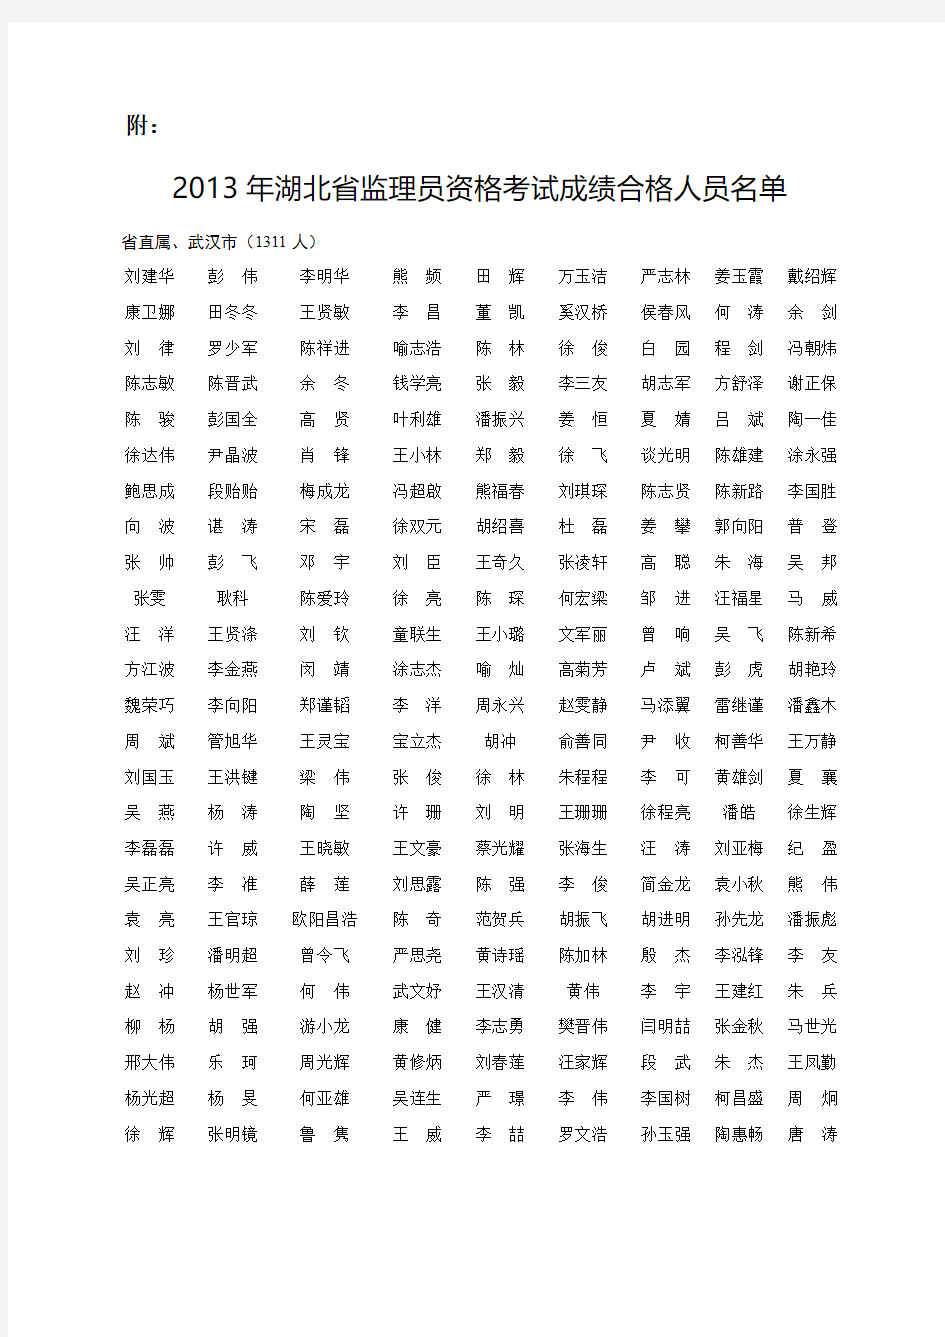 2013年湖北省监理员资格考试成绩名单